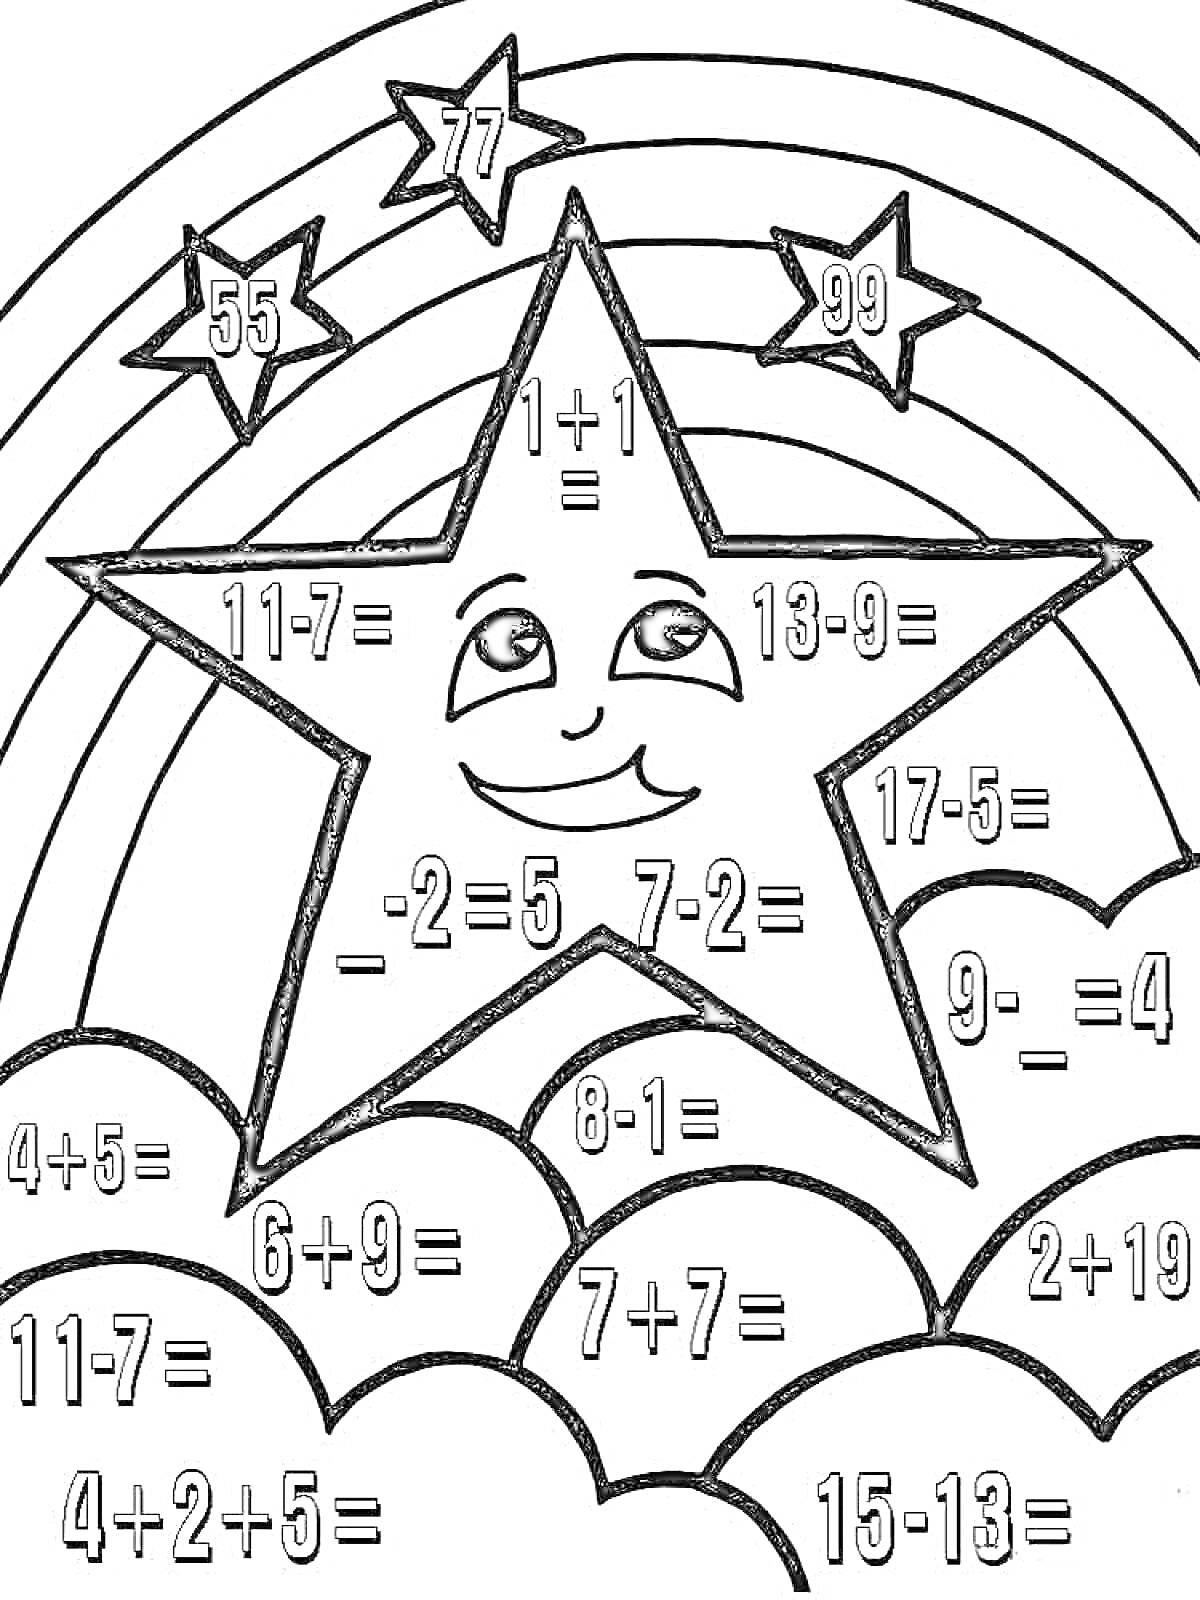 Раскраска Звезда с математическими примерами на фоне радуги и облаков